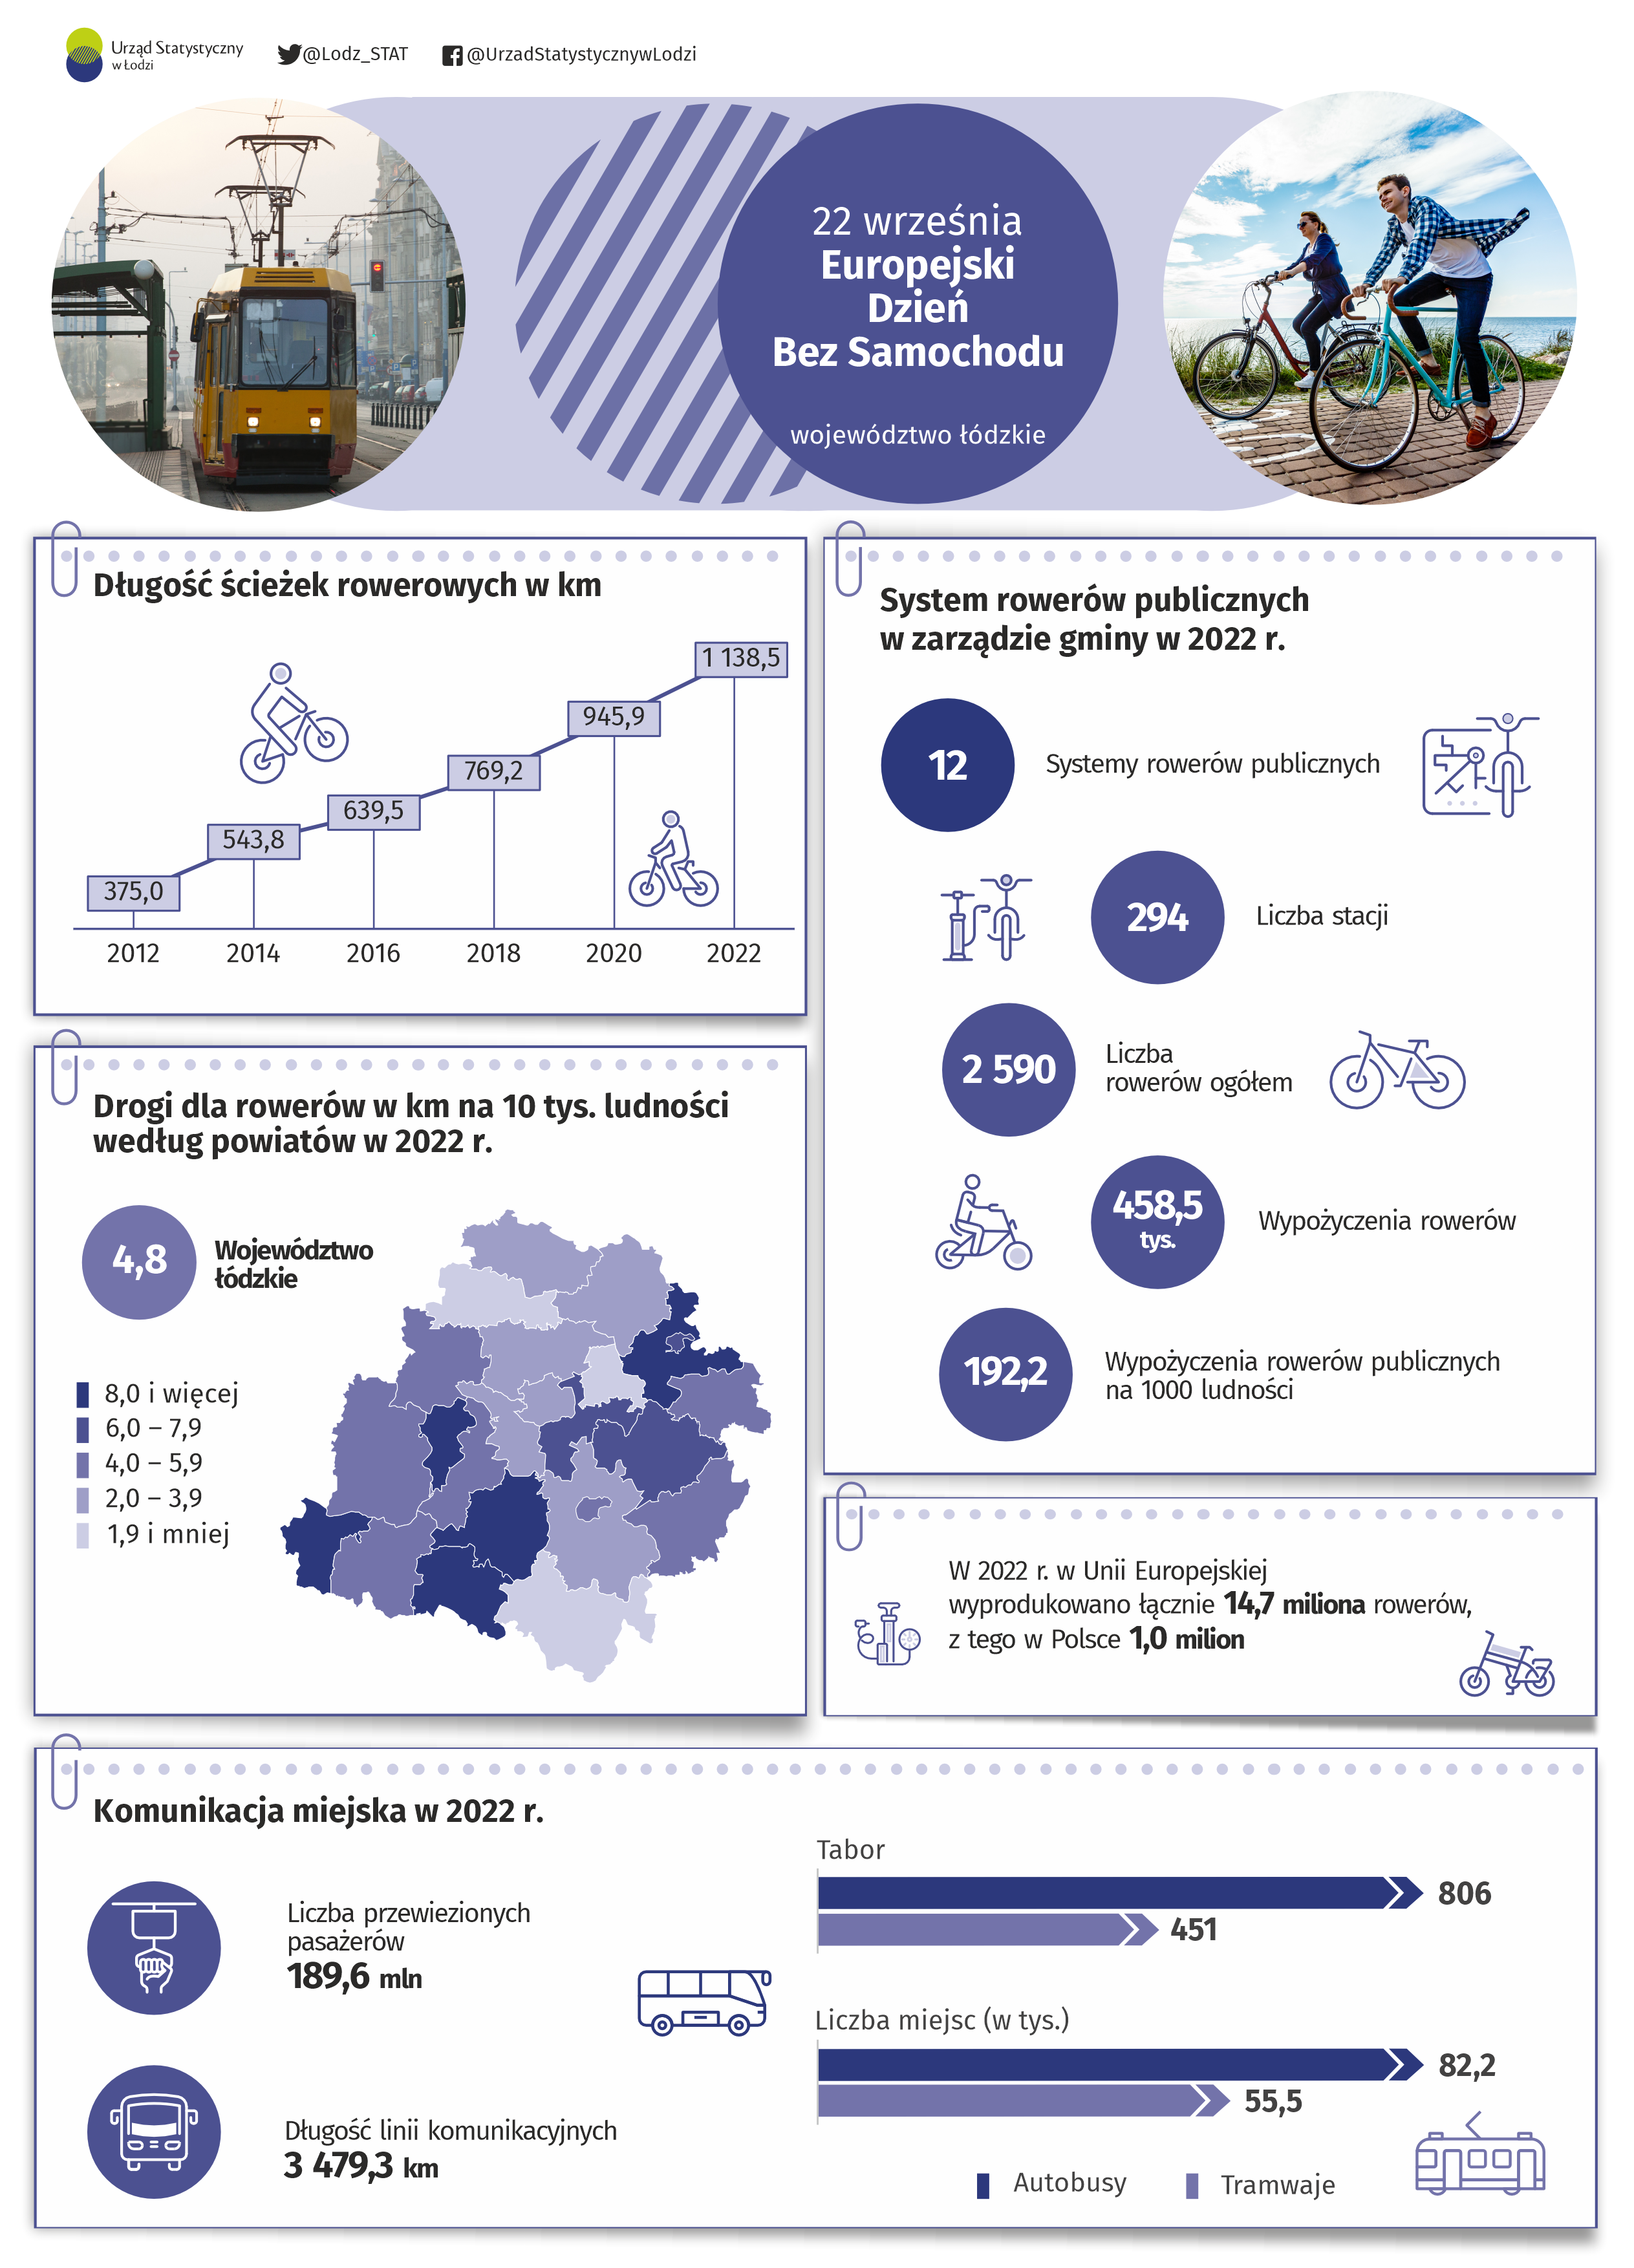 Infografika na Europejski Dzień Bez Samochodu przedstawiająca dane odnośnie dróg rowerowych i komunikacji miejskiej w 2022 r. w województwie łódzkim